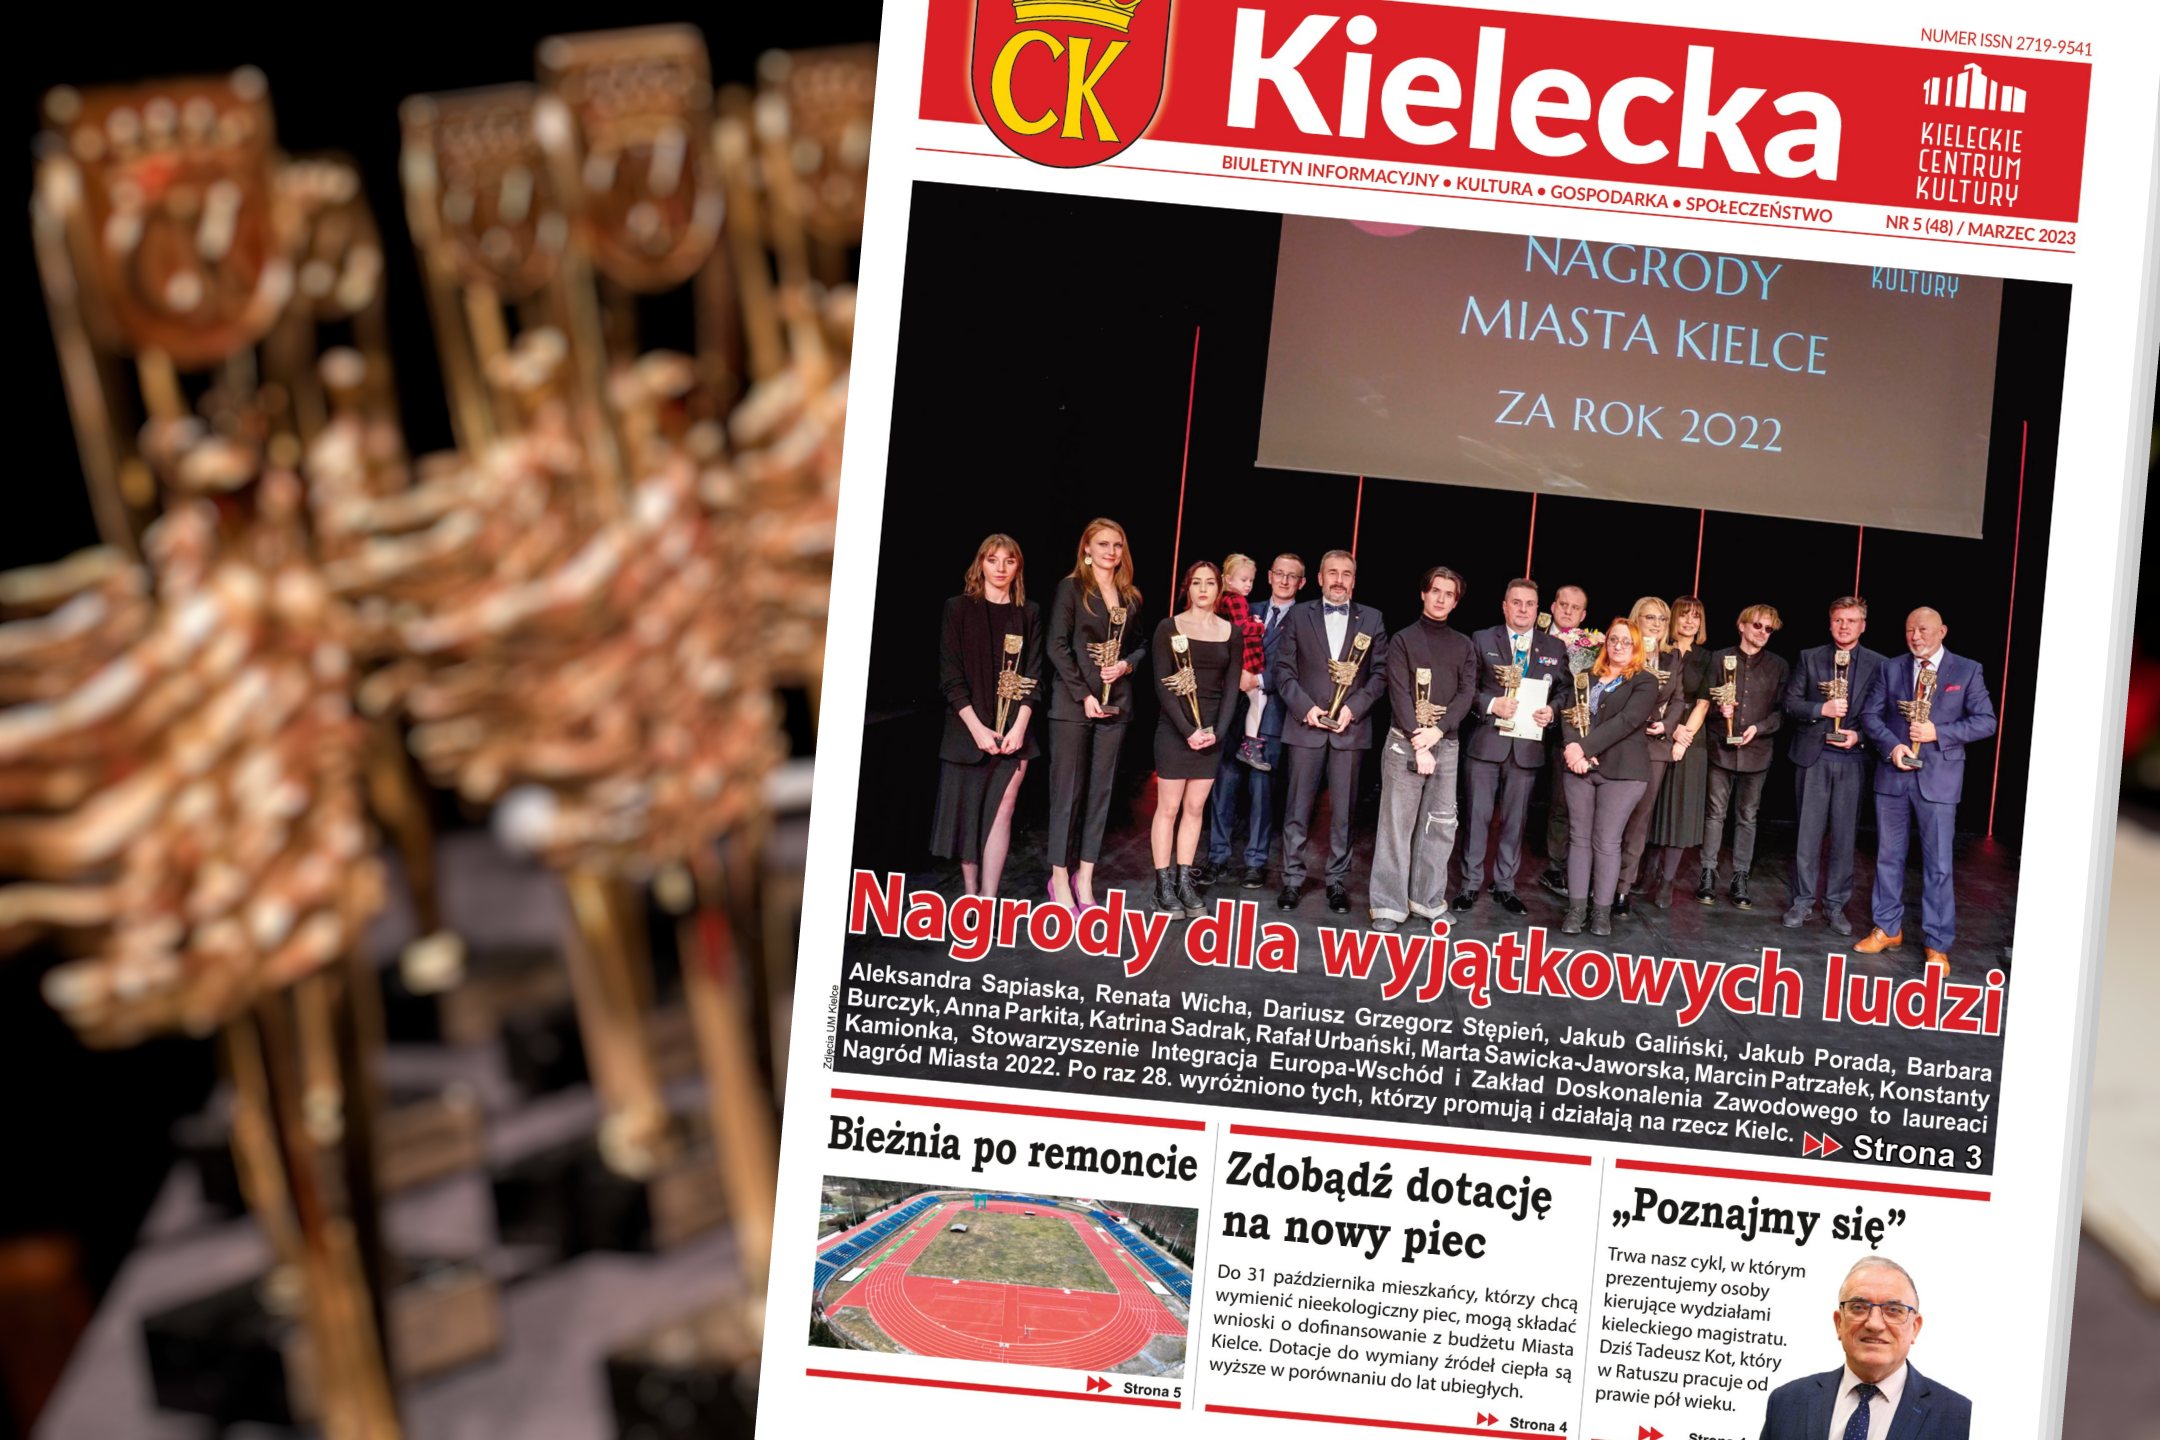 Grafika z pierwszą stronę biuletynu "Kielecka", zdjęcie laureatów Nagrody Miasta Kielce 2022, w tle statuetki